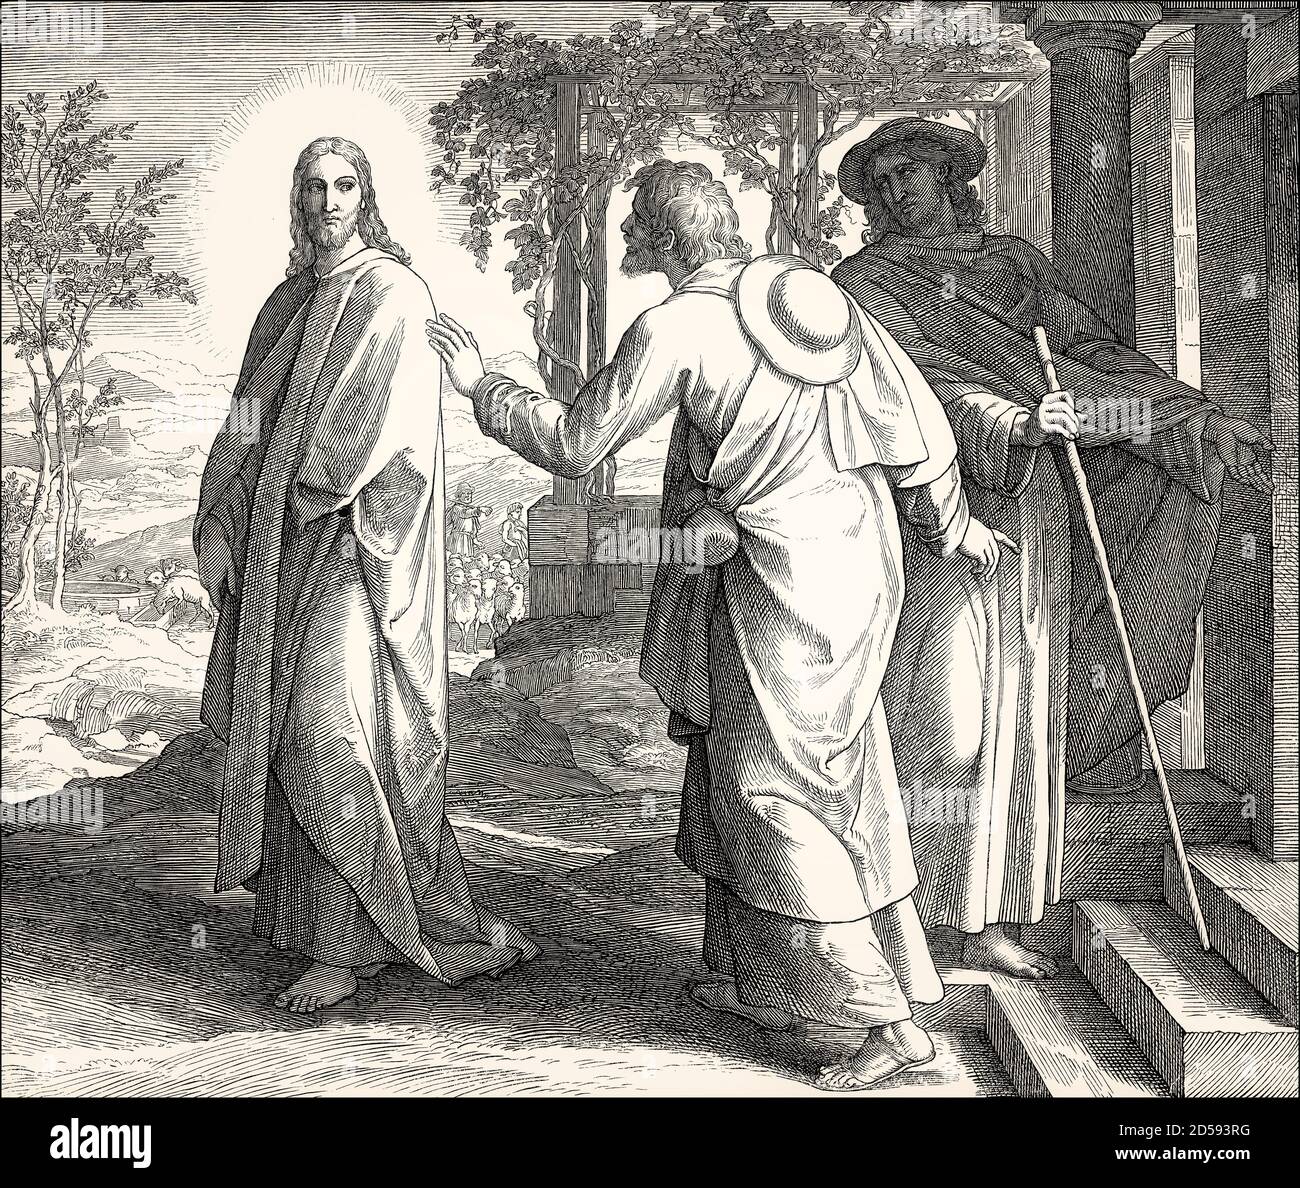 La route vers l'apparition d'Emmaüs, Nouveau Testament, par Julius Schnorr von Carolsfeld, 1860 Banque D'Images